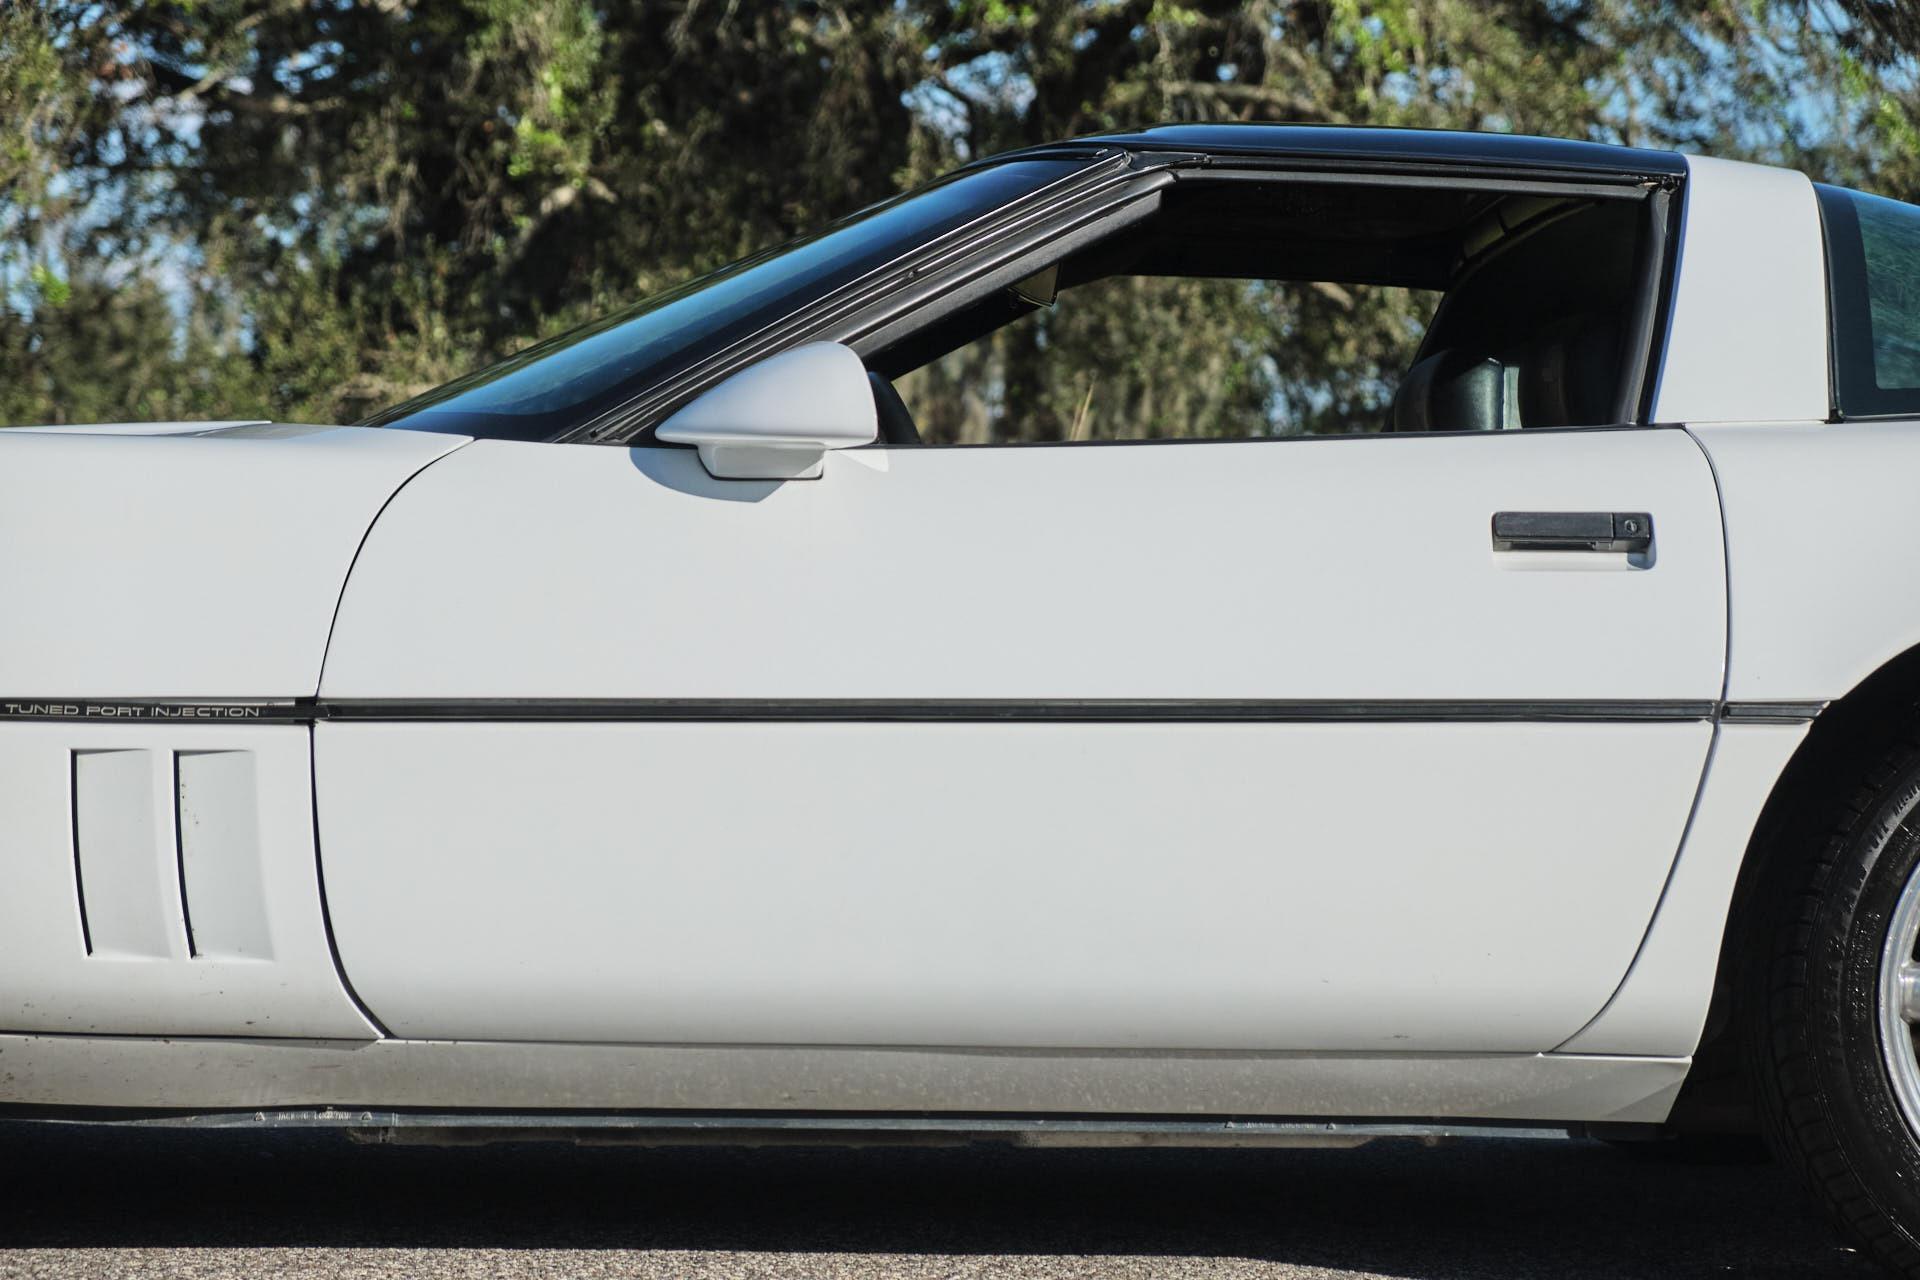 1990 CHEVROLET Corvette Coupe - $14,990